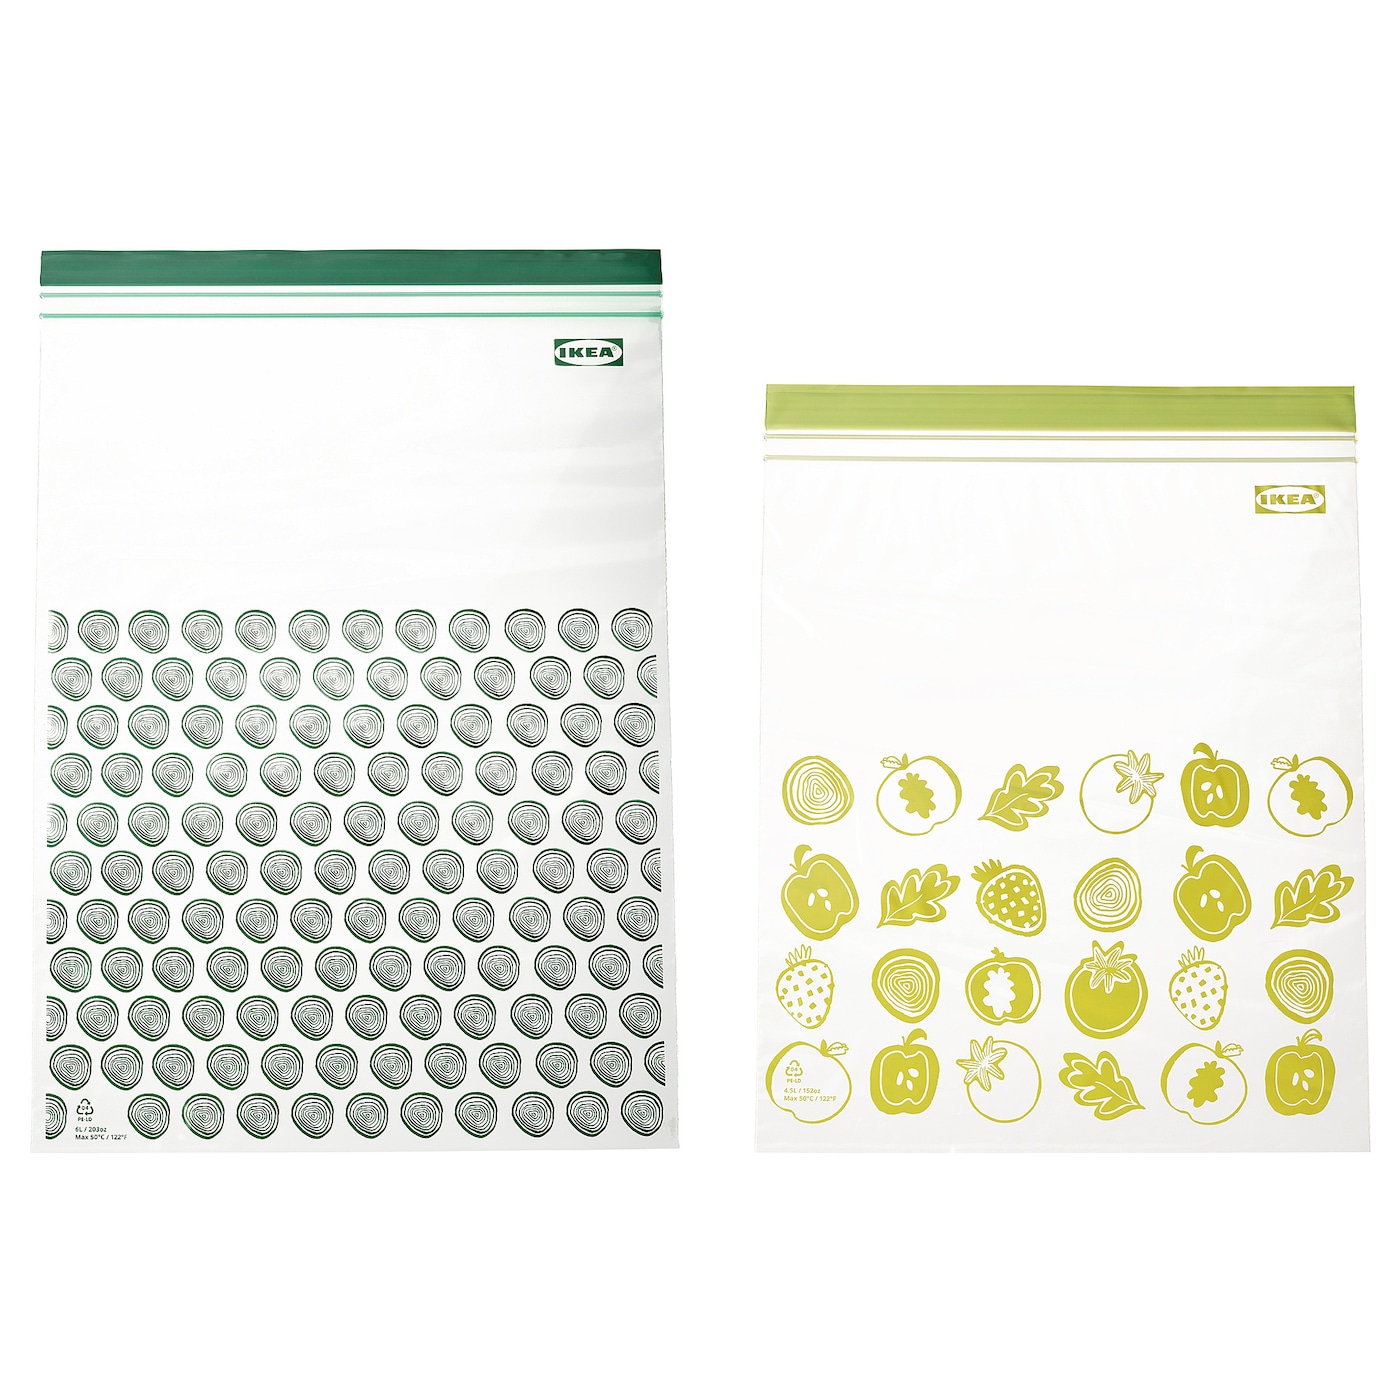 Пакет для продуктов, 30 шт. - IKEA ISTAD, 4.5 л, зеленый/светло-зеленый, ИСТАД ИКЕА